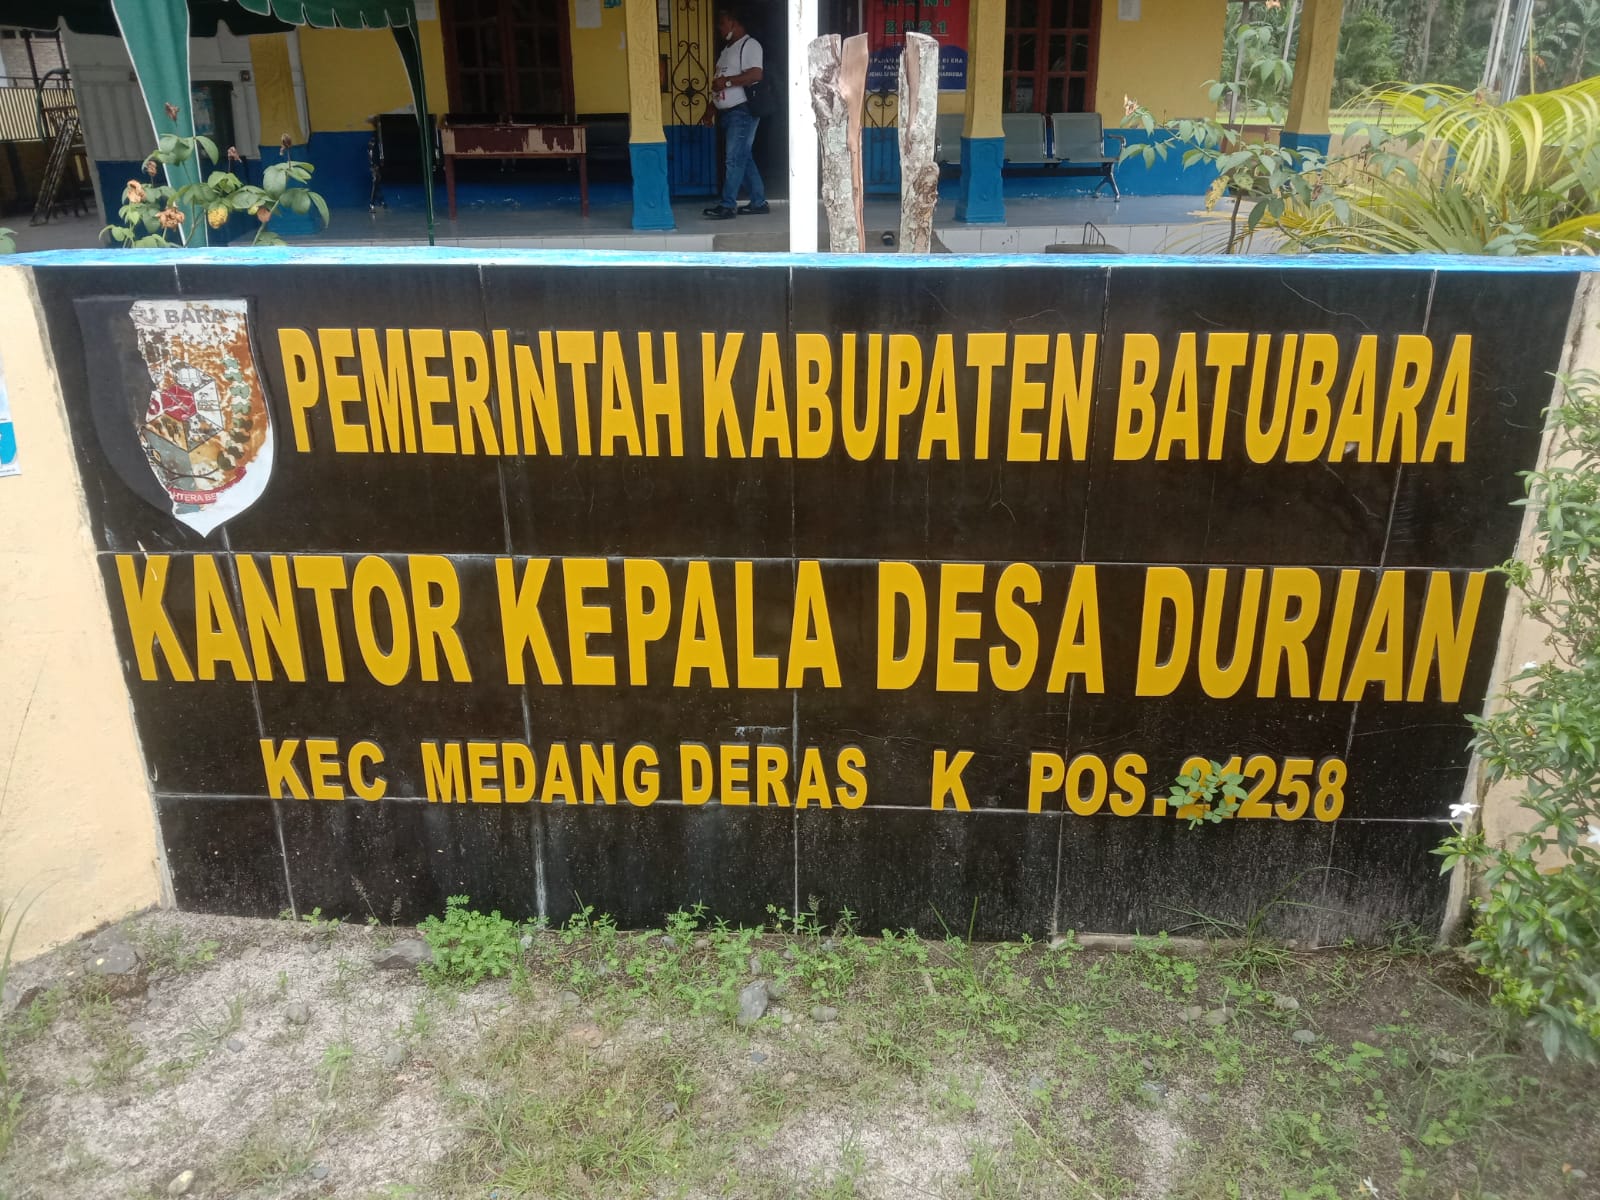  Kantor Kepala Desa Durian Kec. Medang Deras Kab.Batubara Sumatera Utara, Rabu (10/11/2021).beritasire/Alirsyah